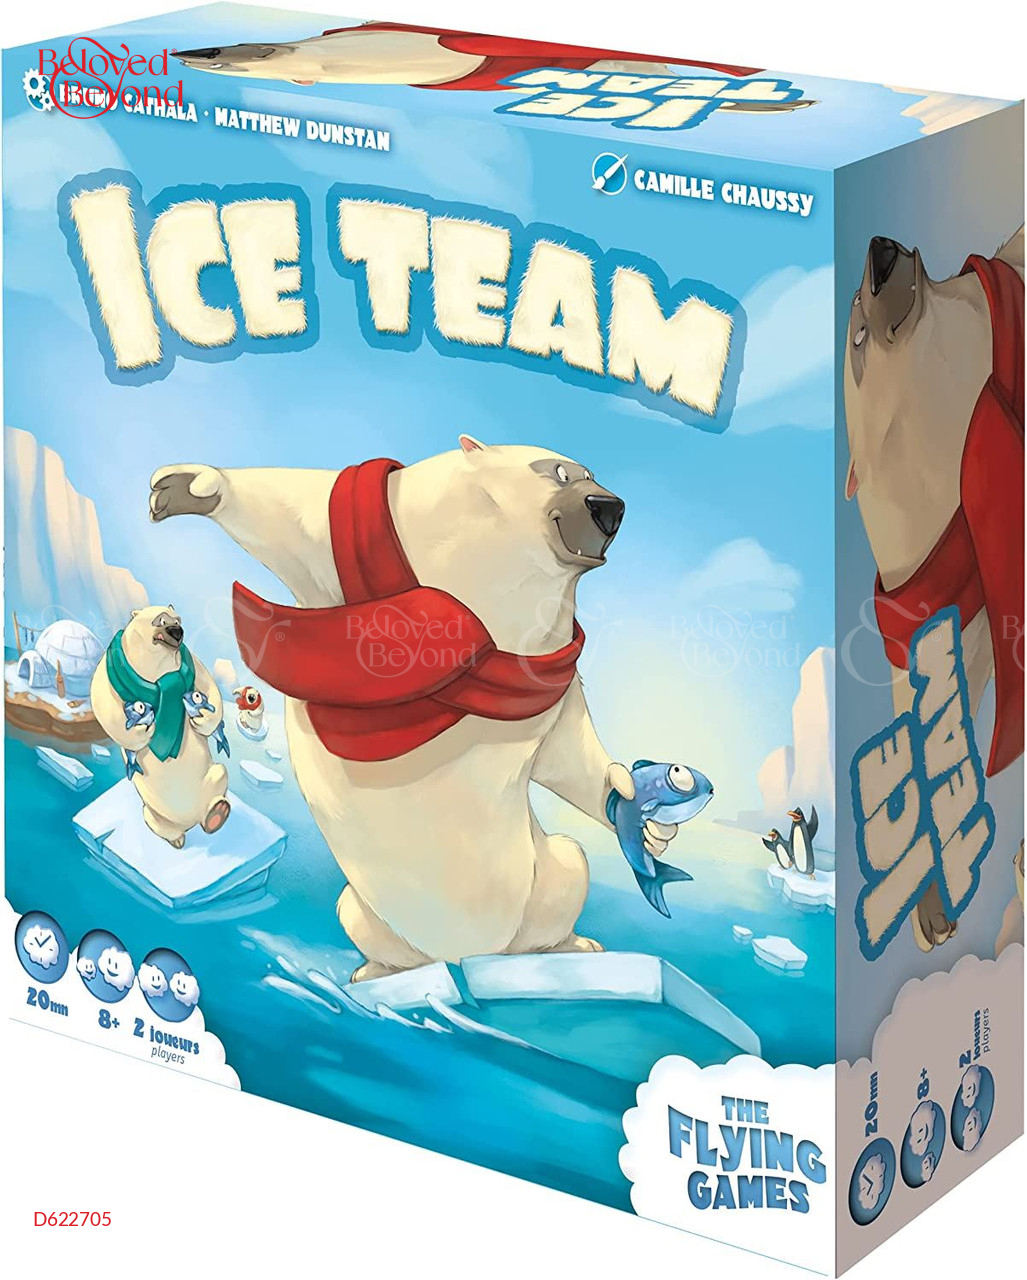 Ice Team - belovedbeyond.com